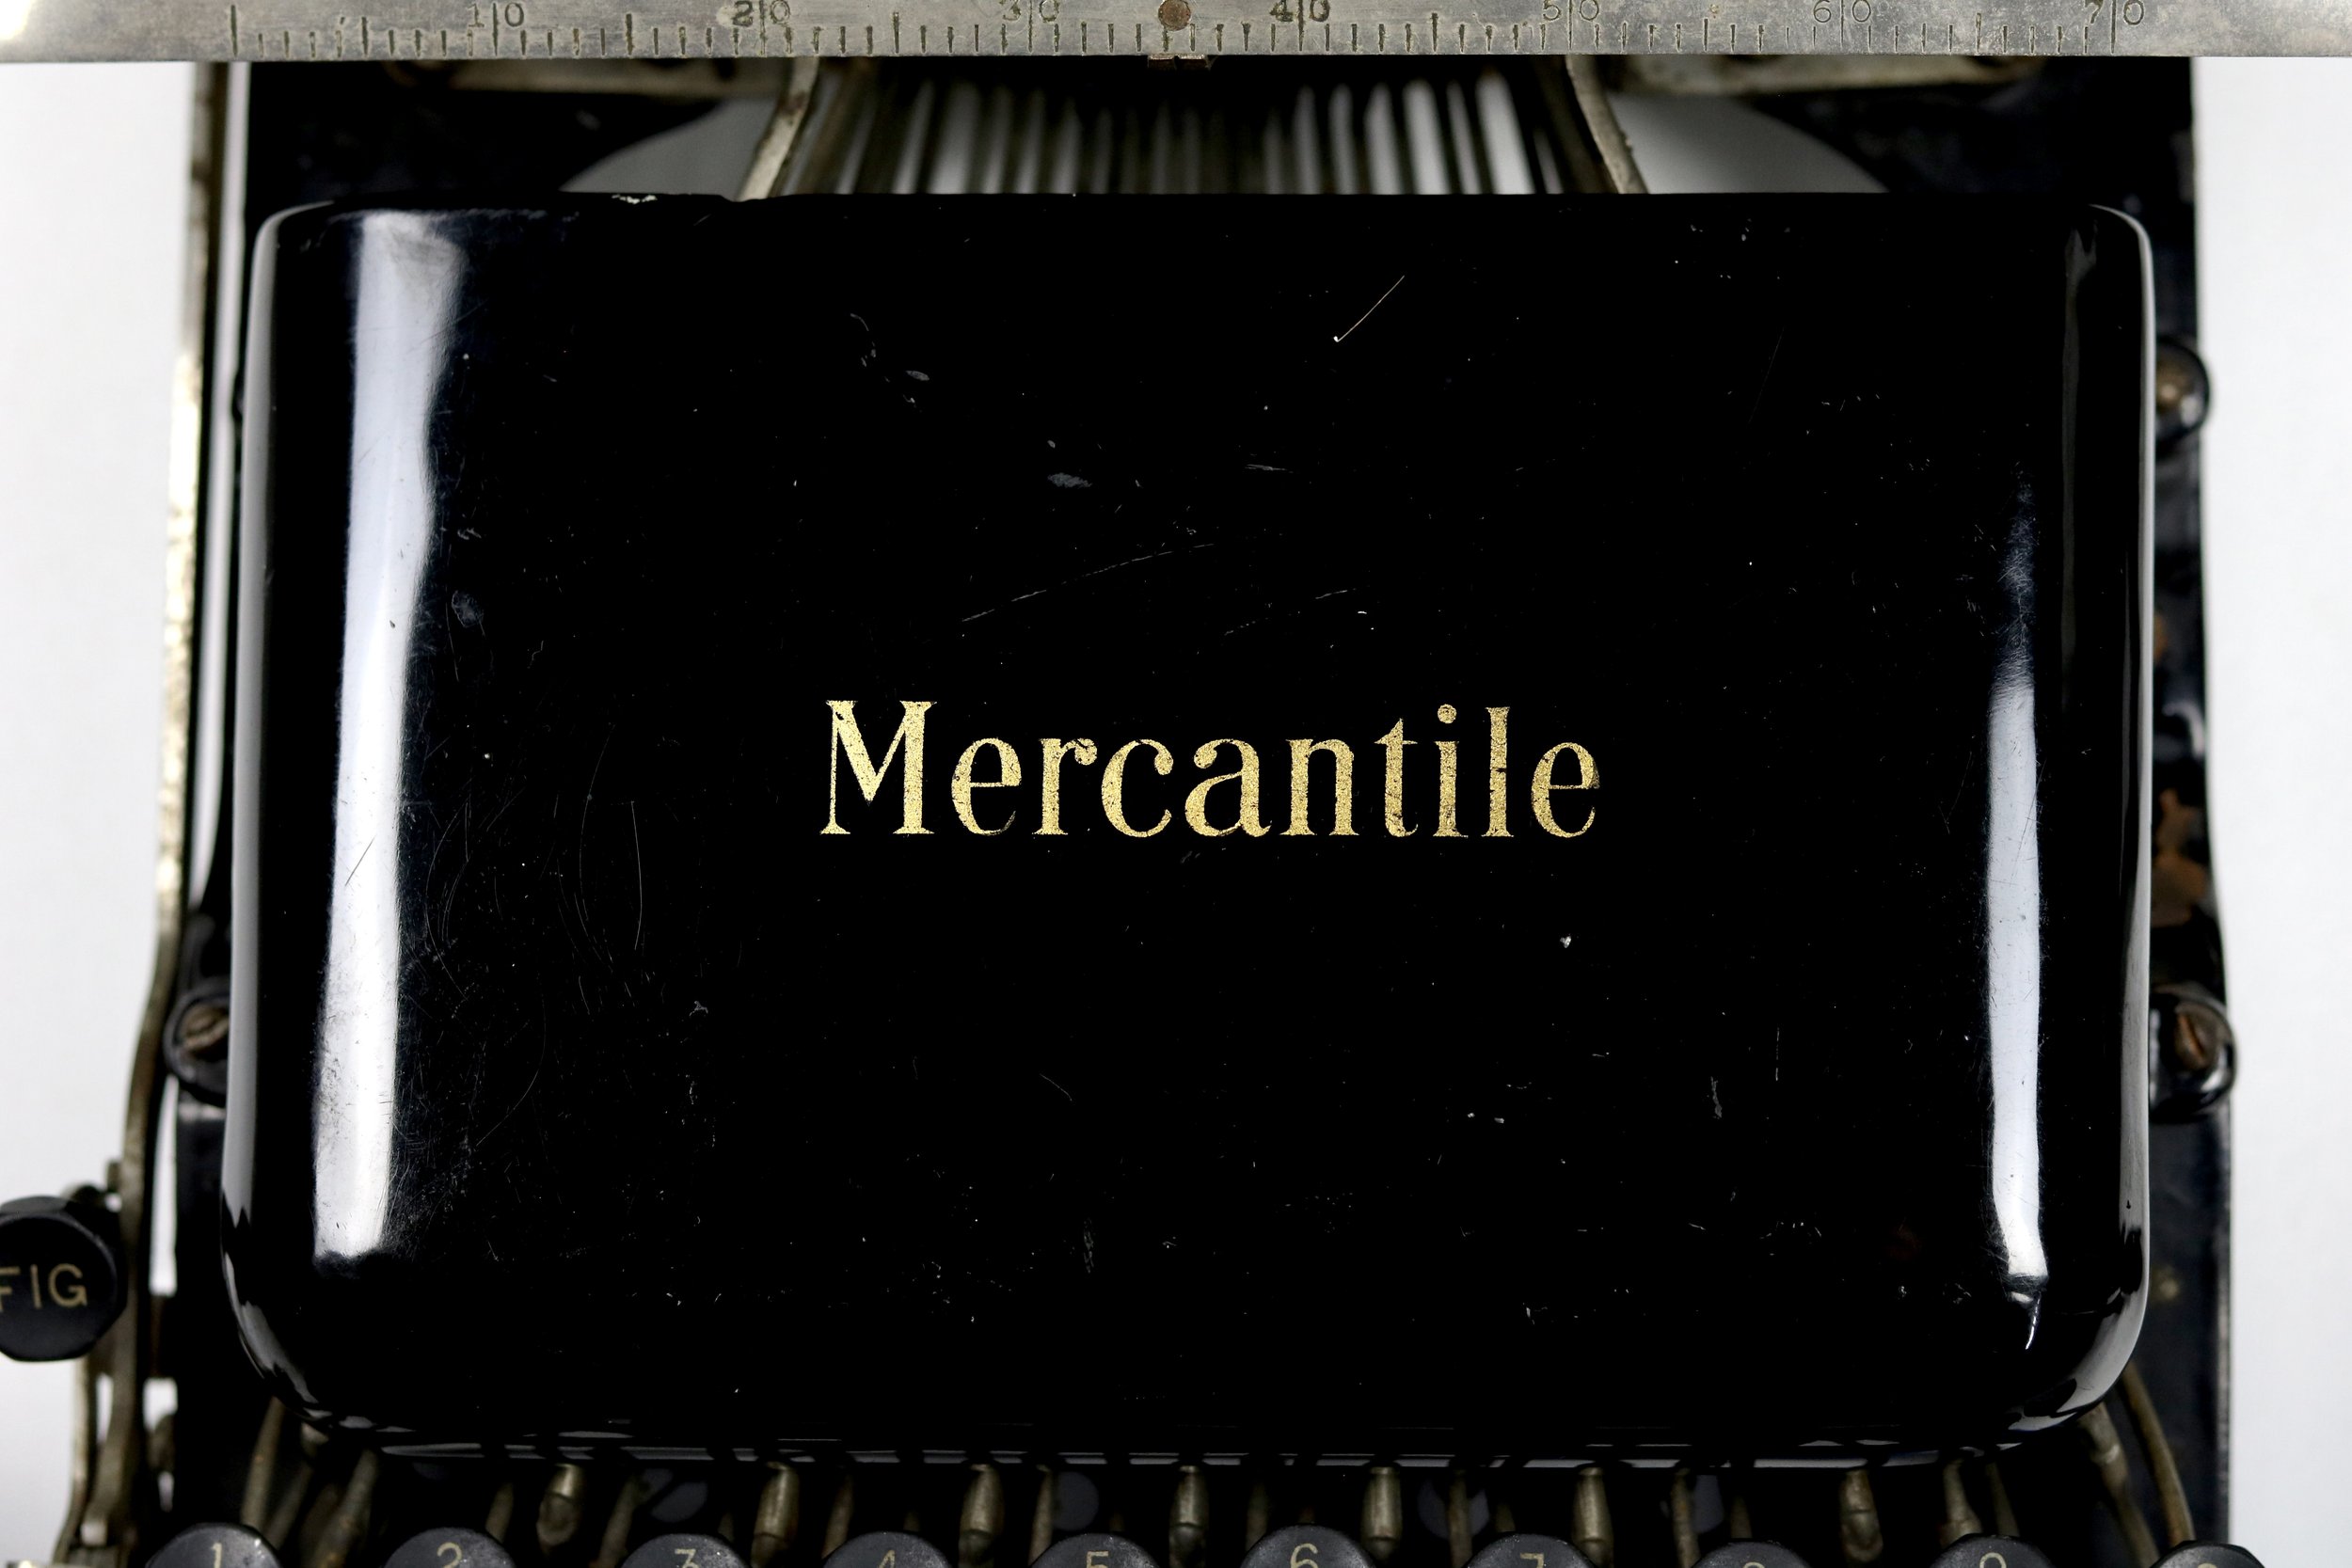 The Mercantile Typewriter - The American Typewriter Co. 265 Broadway, new York